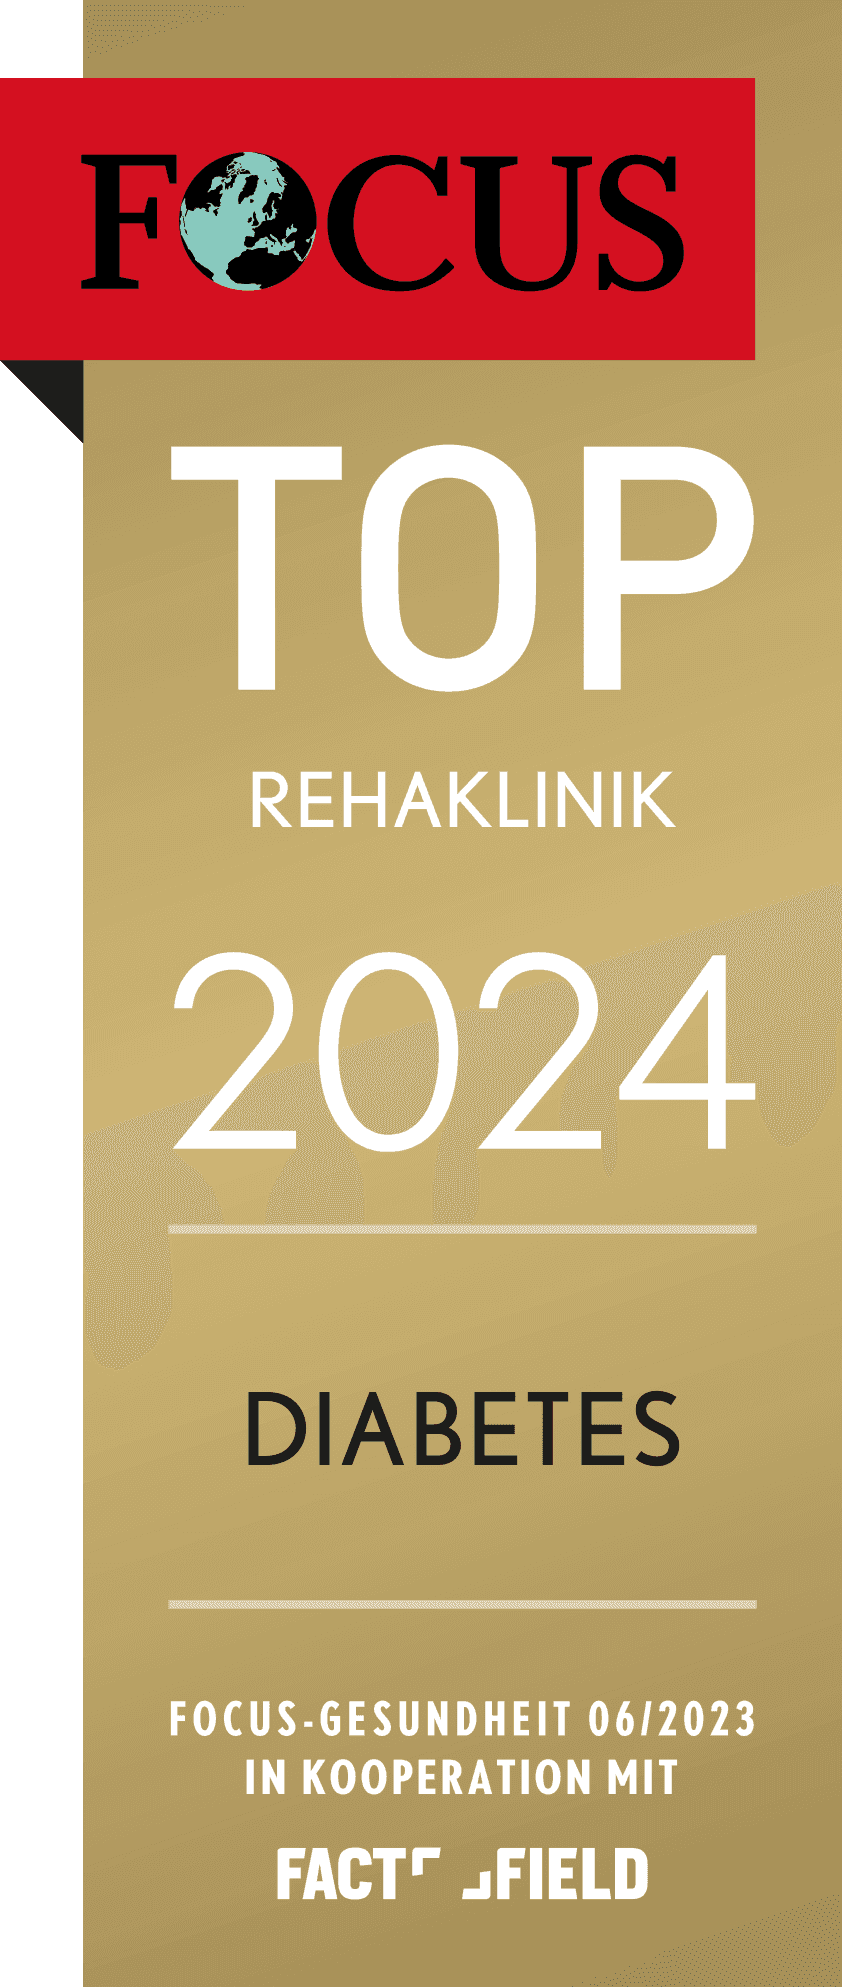 Focus-Siegel der Rehaklinik Hohenelse für das Jahr 2024 als TOP Rehaklinik für Diabetes